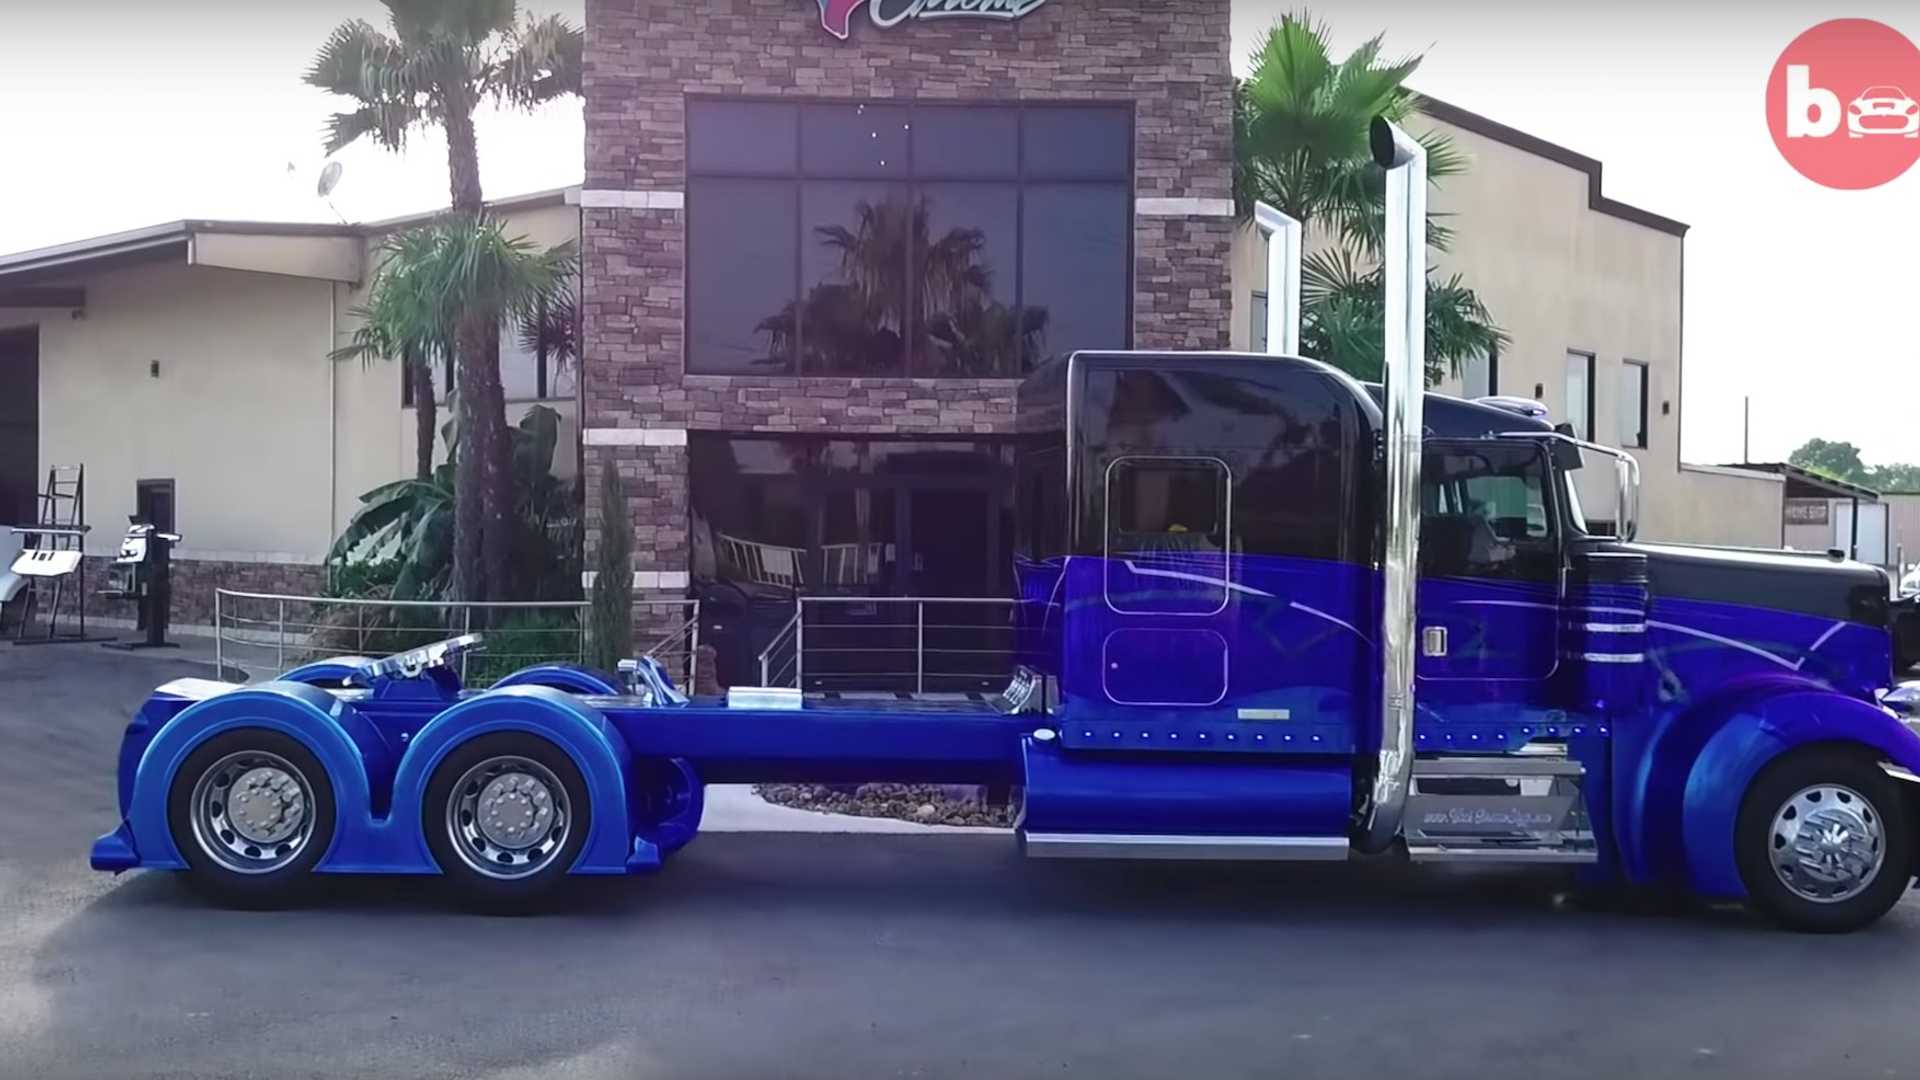 Машина 750 сил. Bolt Custom Truck. Безумный тюнинг магистральных автотягачей.